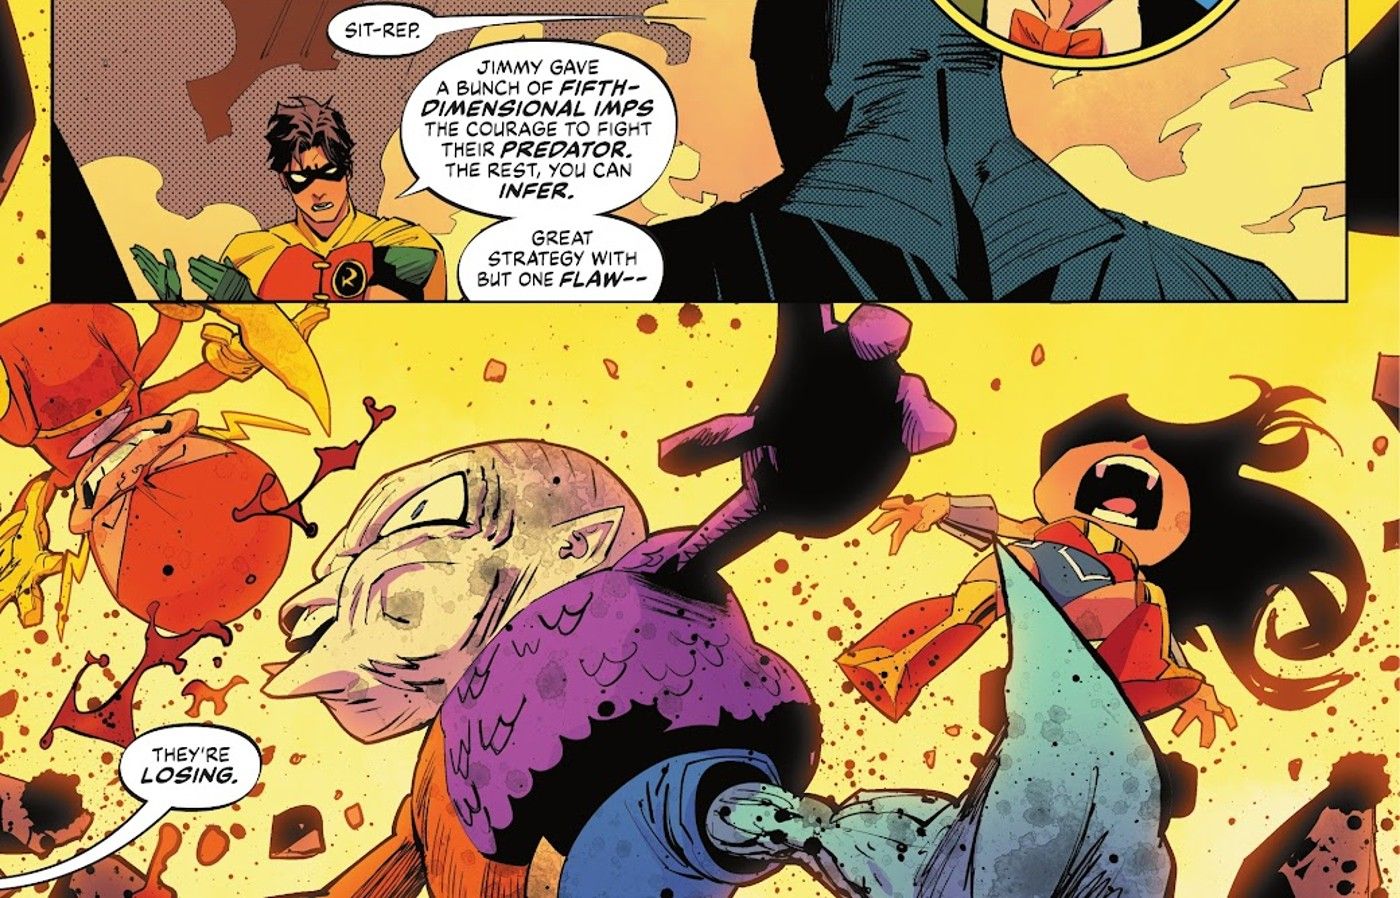 Painéis de histórias em quadrinhos: Robin diz ao Batman que a Liga da Justiça Diabinha está perdendo, incluindo as versões diabinhas do Flash, Metamorfo e Mulher-Maravilha.